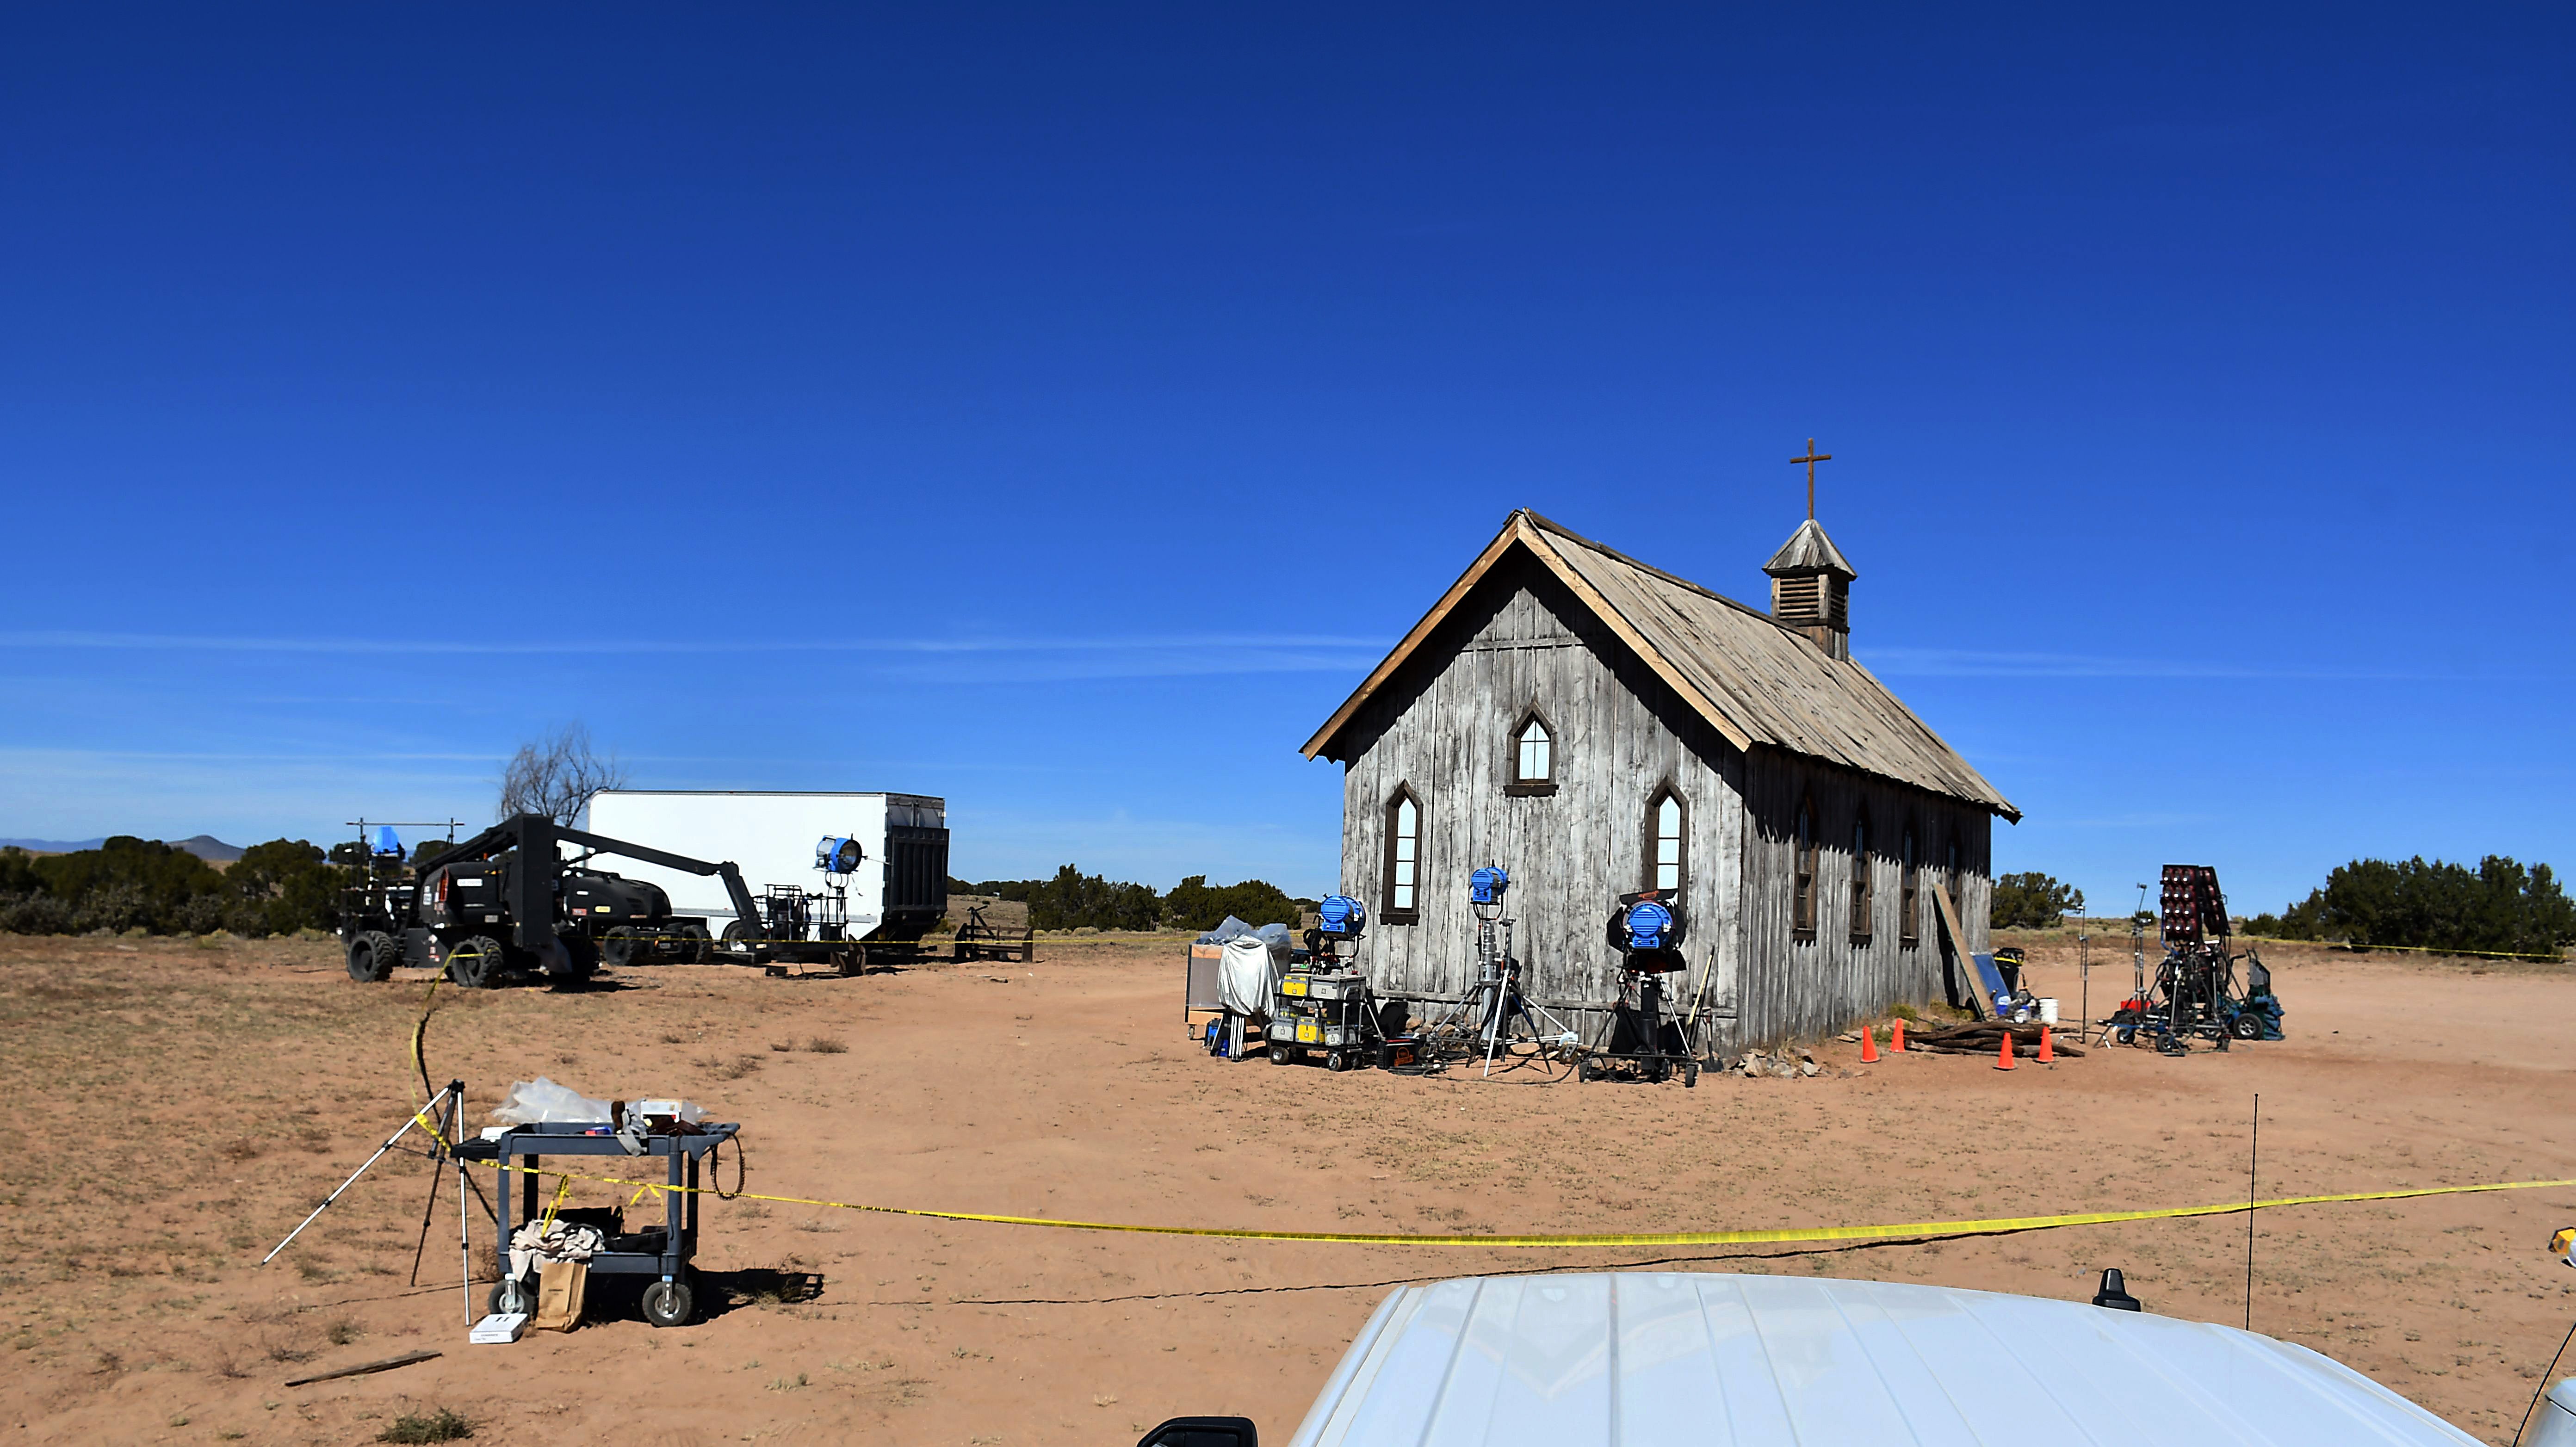 El set de Rust , justo afuera de Santa Fe, Nuevo México, donde ocurrió el tiroteo